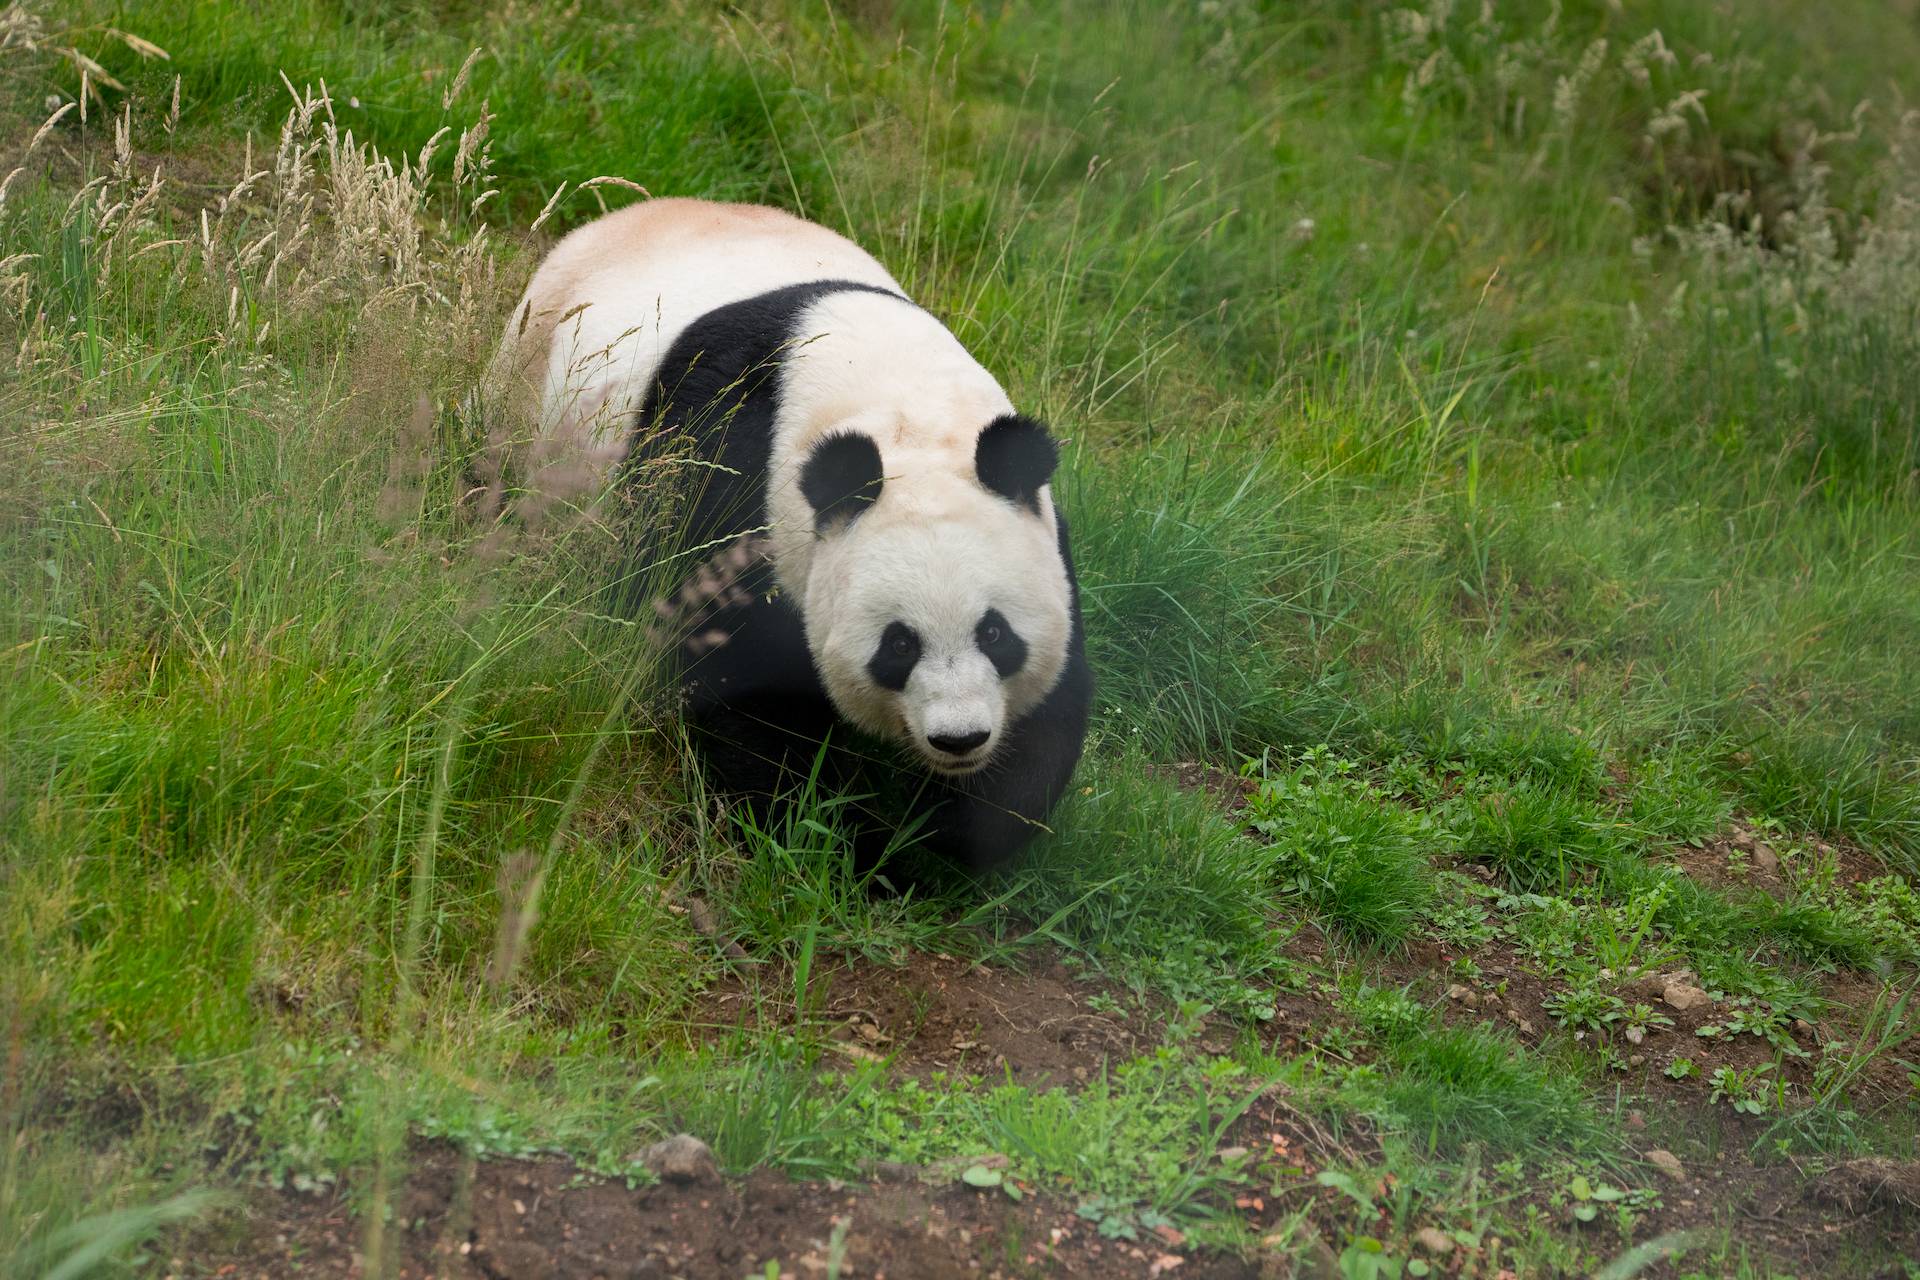 Giant panda Tian Tian walking through grass toward camera

Image: SIAN ADDISON 2019